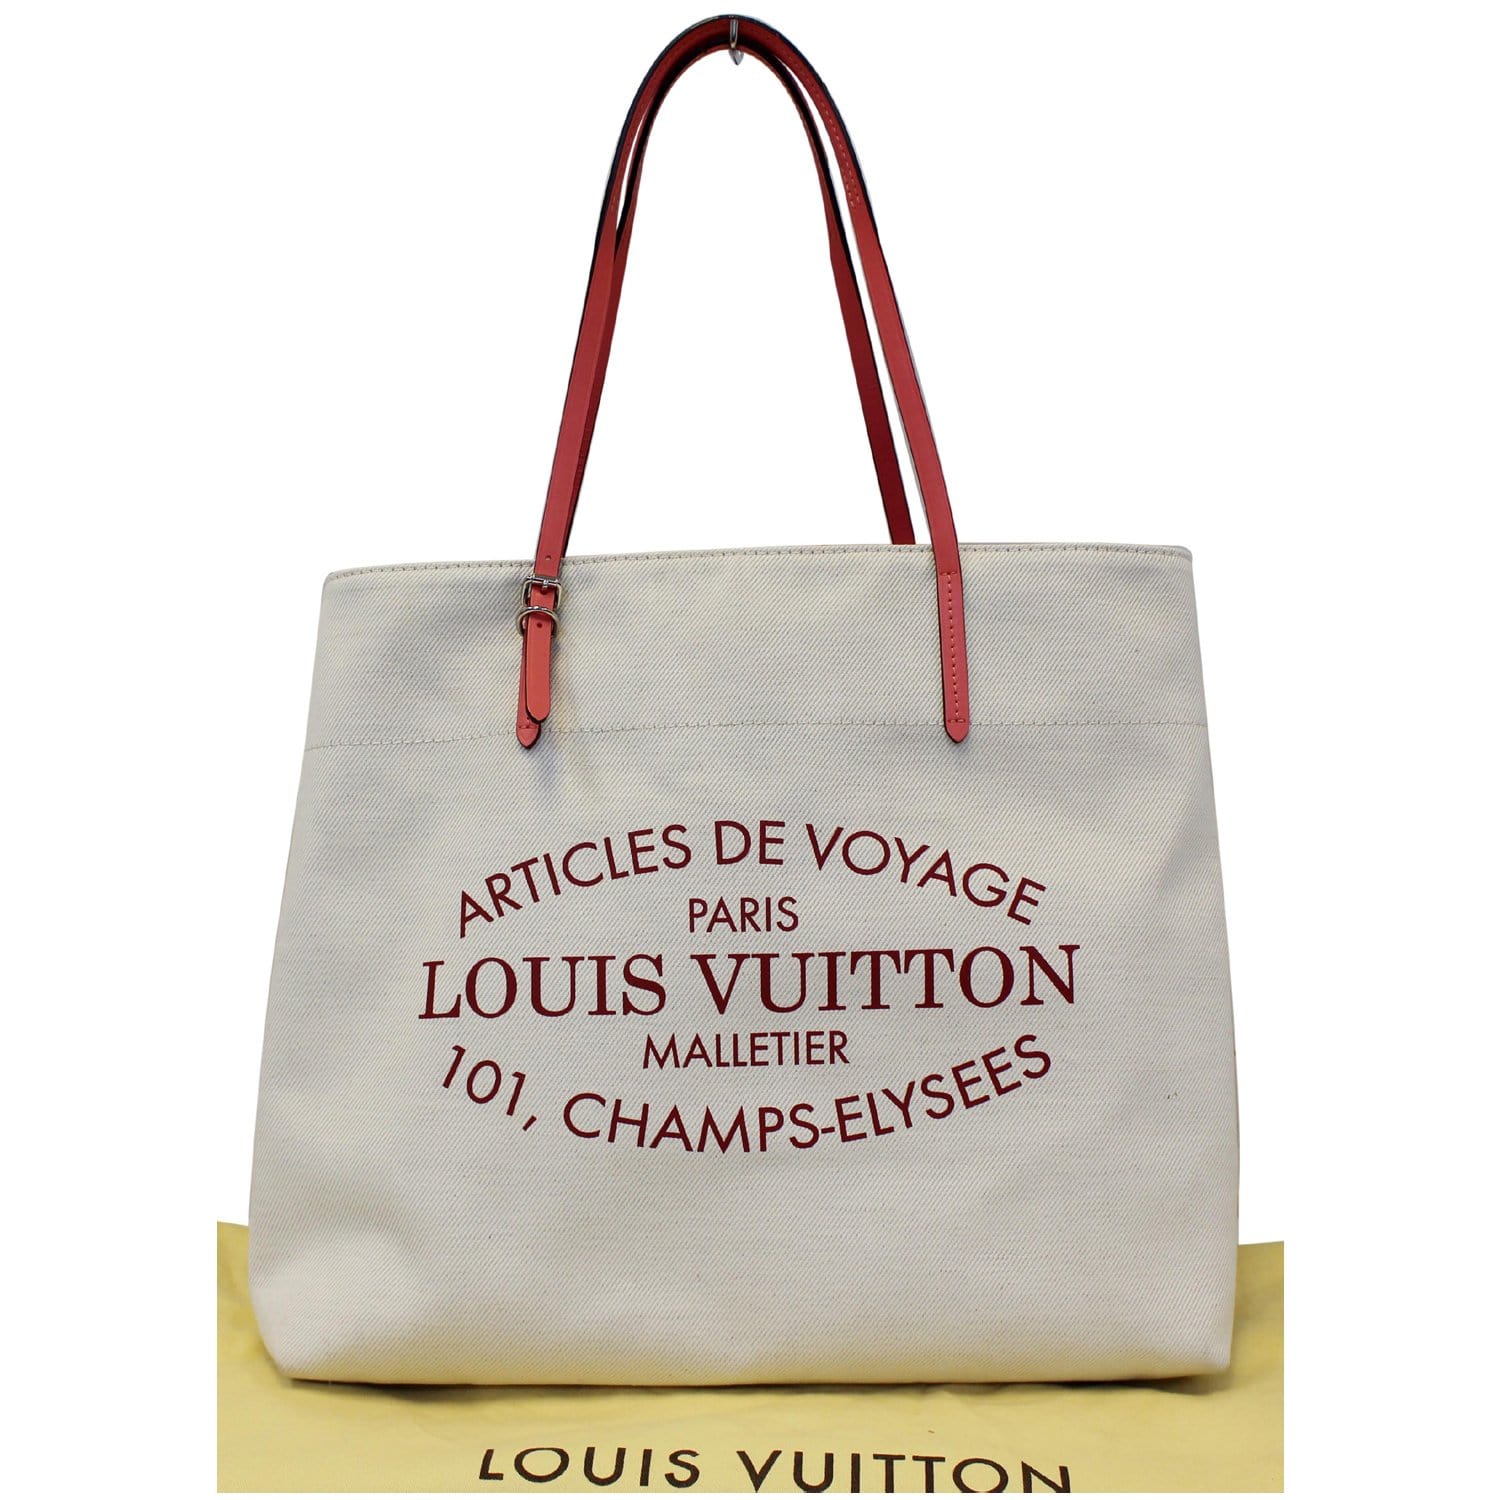 Lv Articles de voyage Louis Vuitton 101, champs elysees Paris